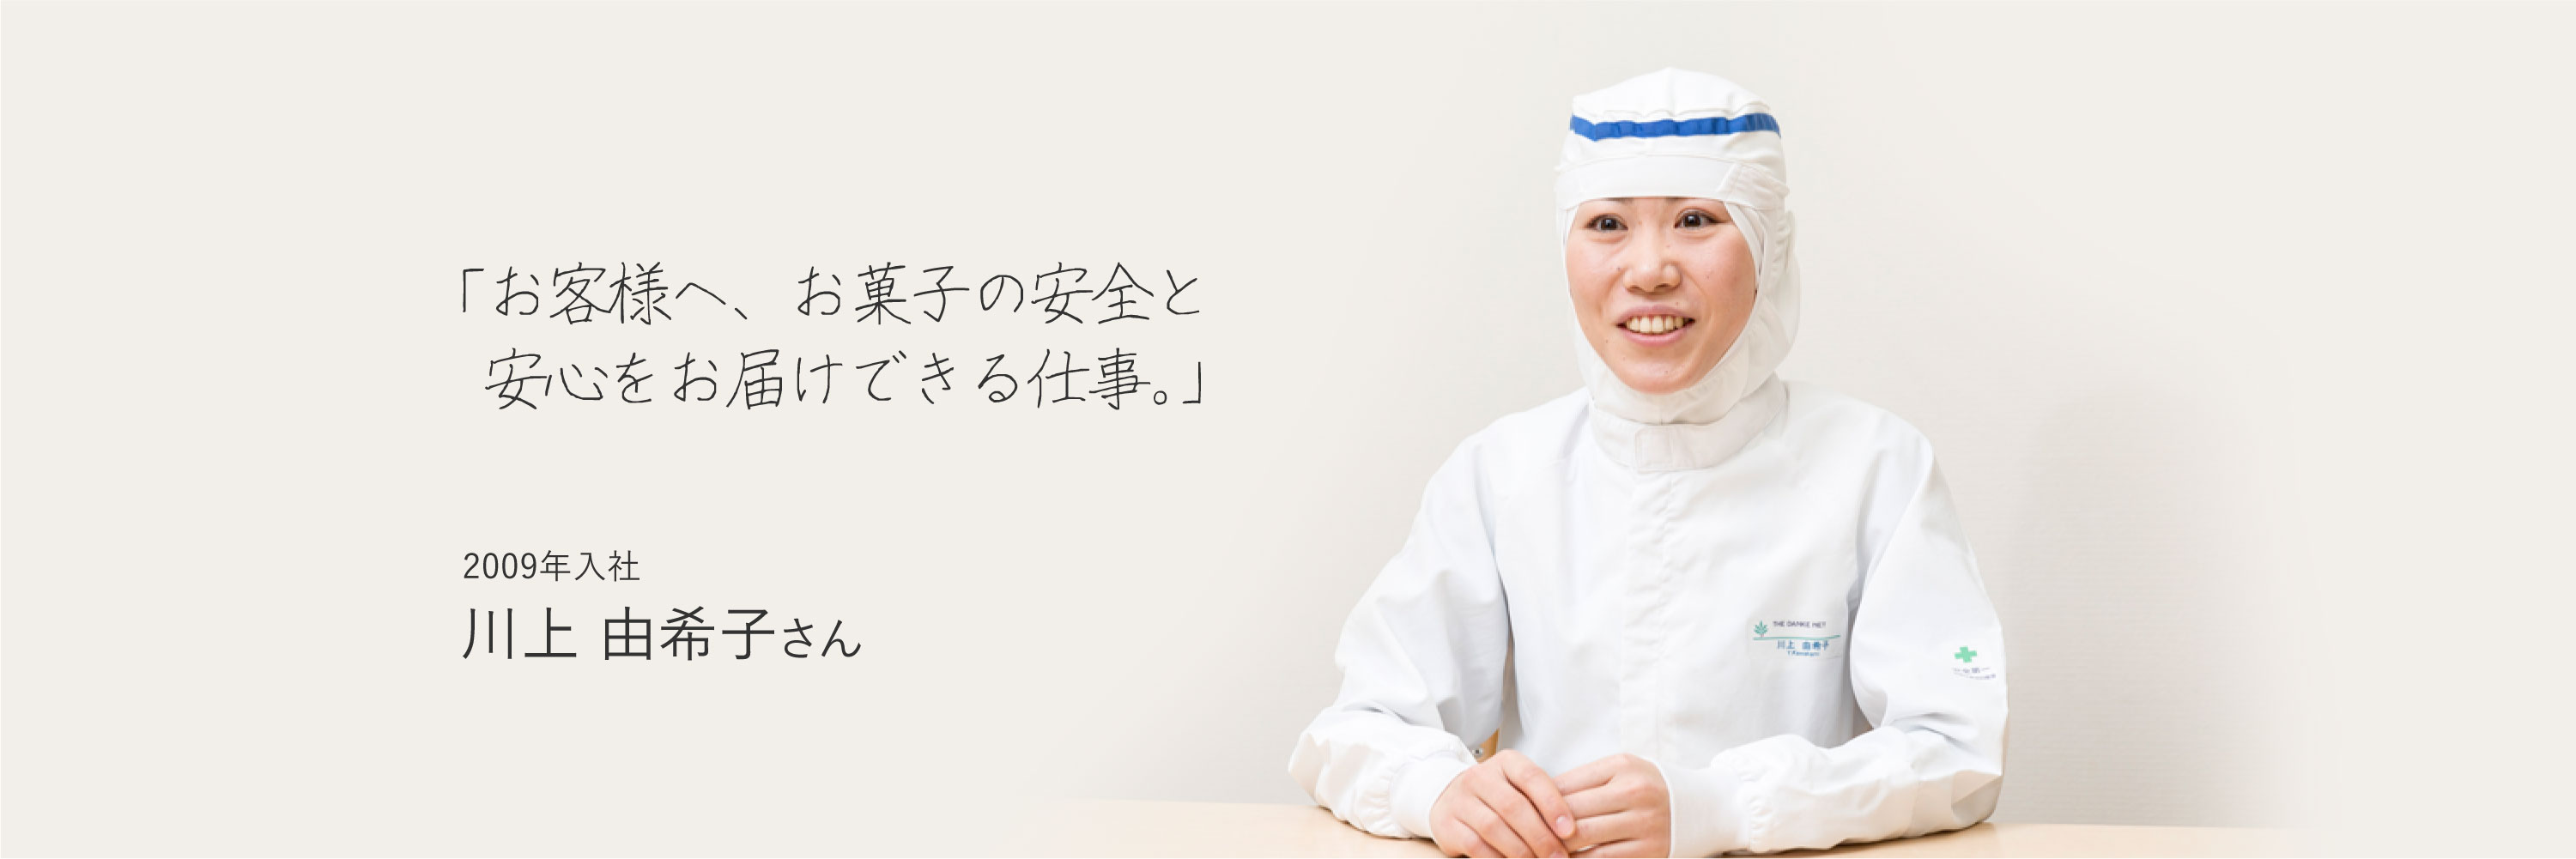 「お客様へ、お菓子の安全と安心をお届けできる仕事。」　2009年入社　川上 由希子さん